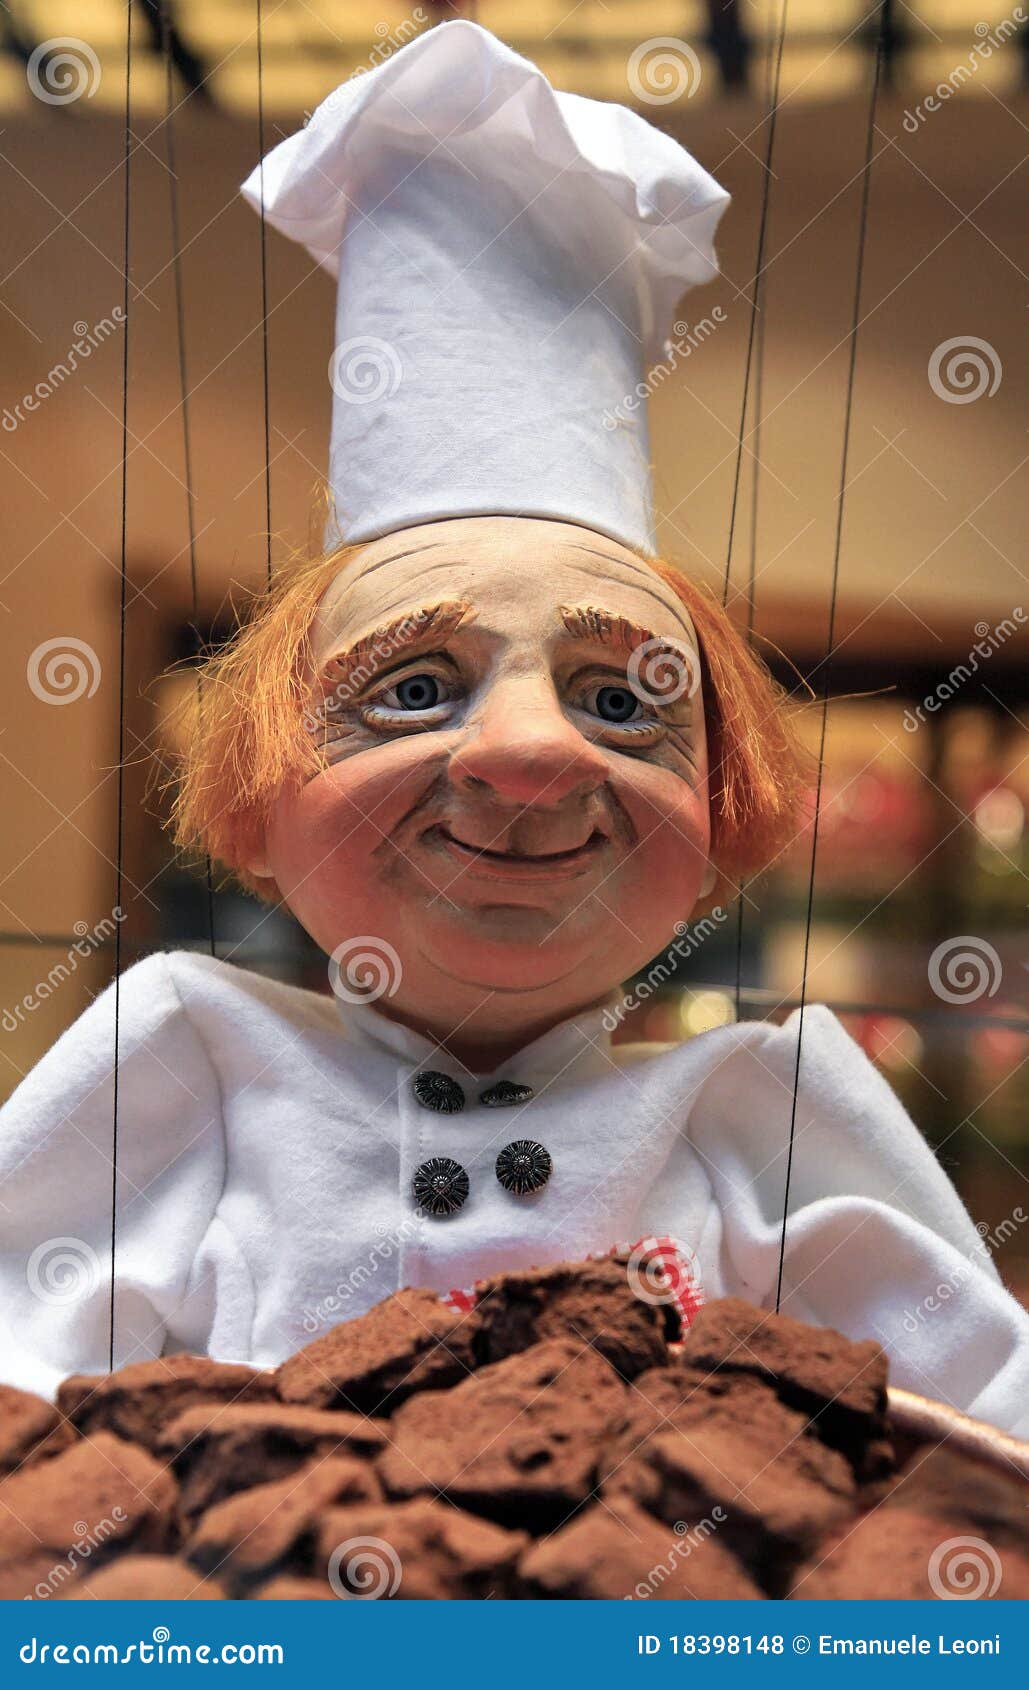 maitre chocolatier puppet in bruxelles, belgium